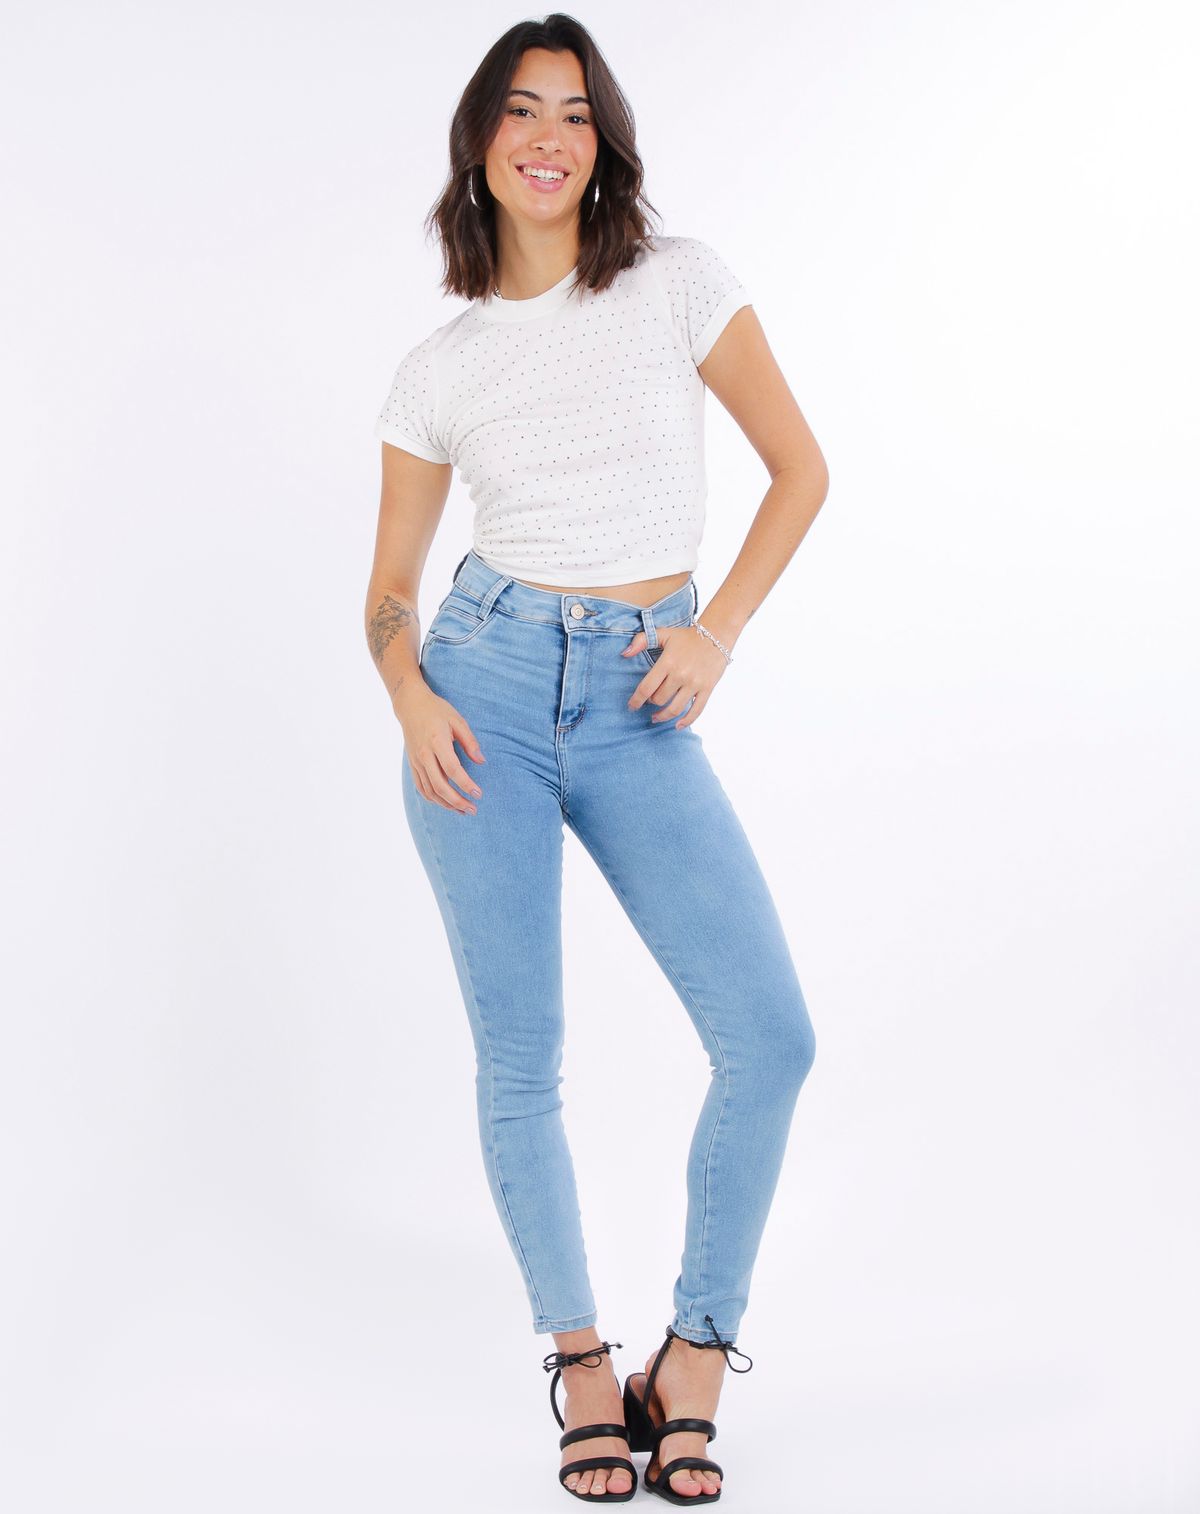 690485002-calca-jeans-clara-feminina-sawary-skinny-jeans-claro-38-665